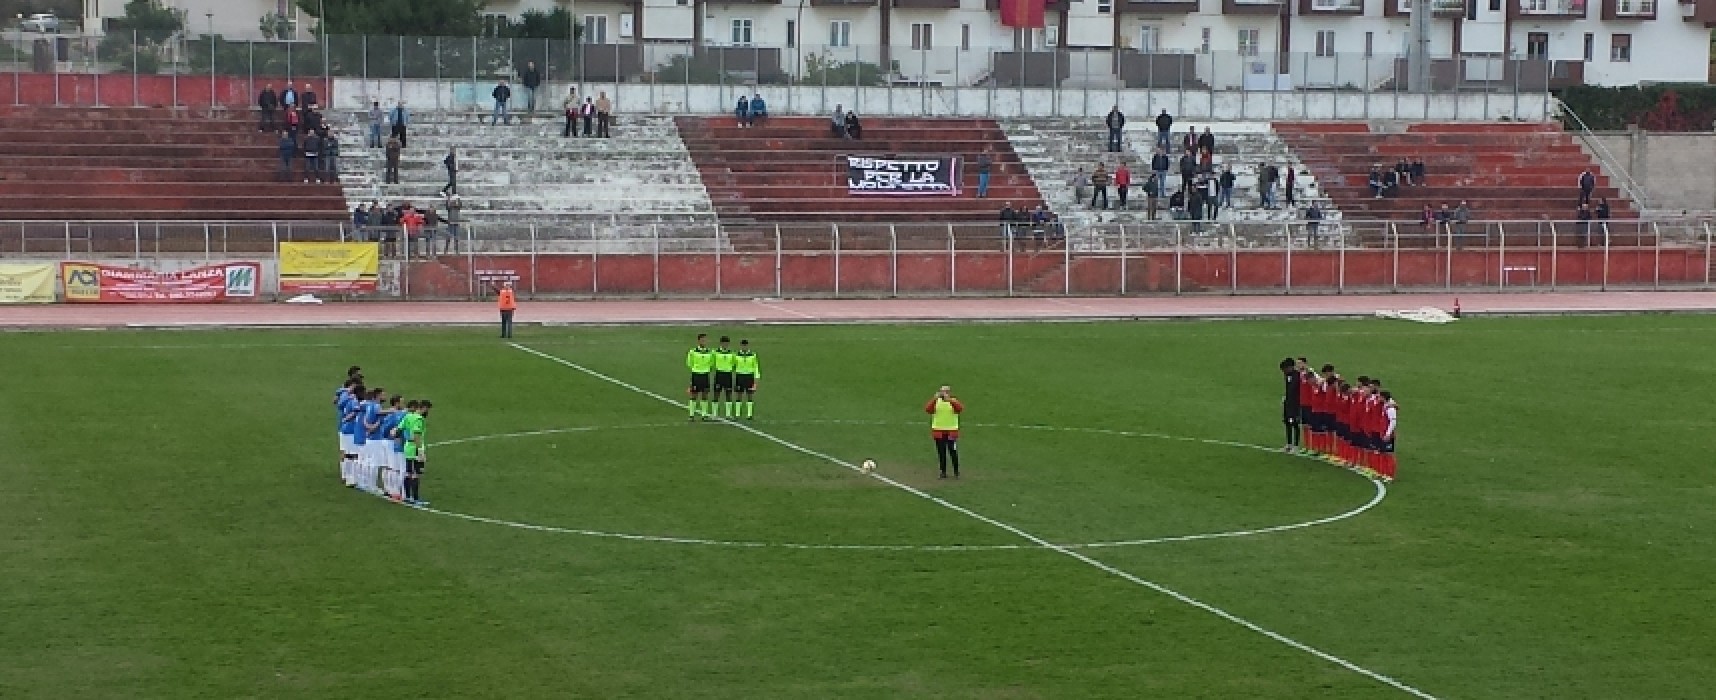 Unione Calcio seconda sconfitta consecutiva, ko 2-0 nel derby a Molfetta / CLASSIFICA